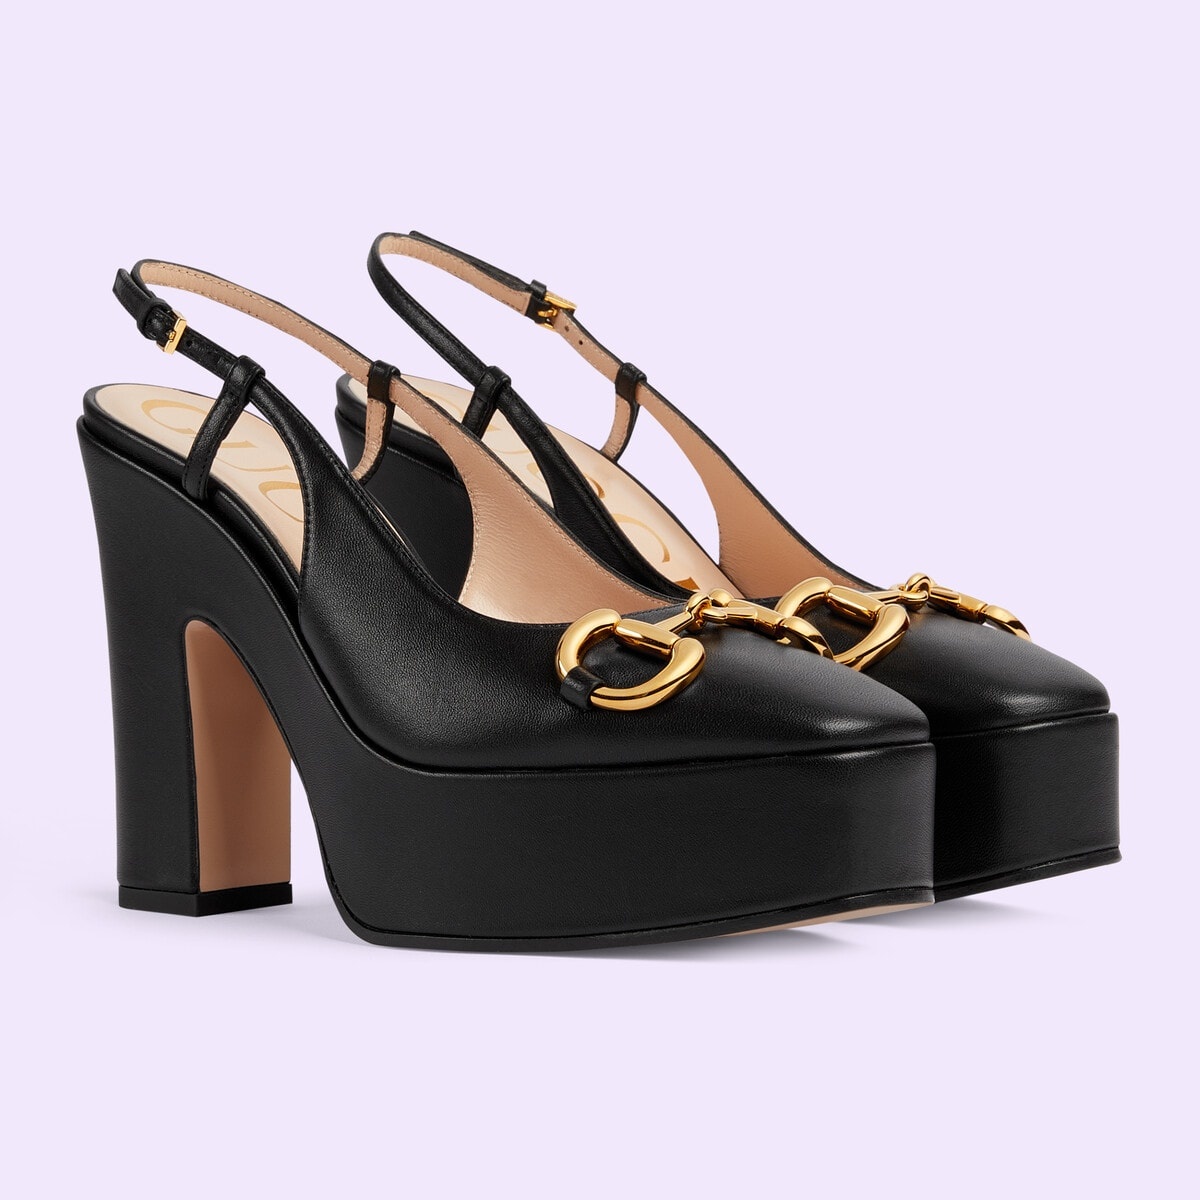 Women's high heel pump - 2